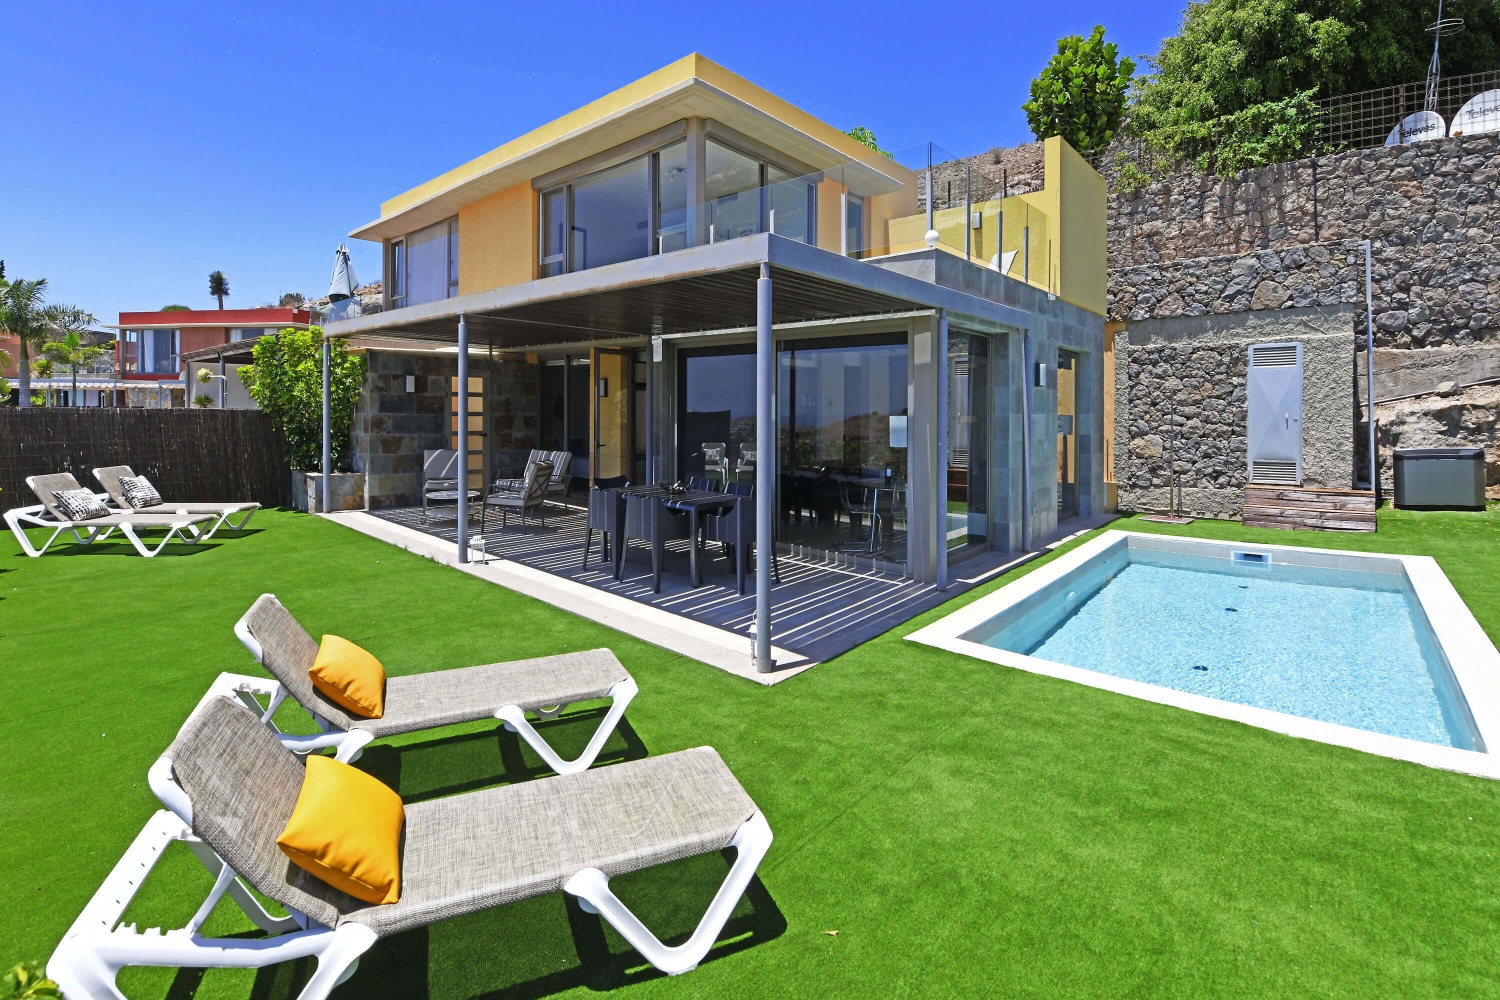 Casa a due piani dal design moderno, ampie vetrate e piacevole dehor con piscina privata